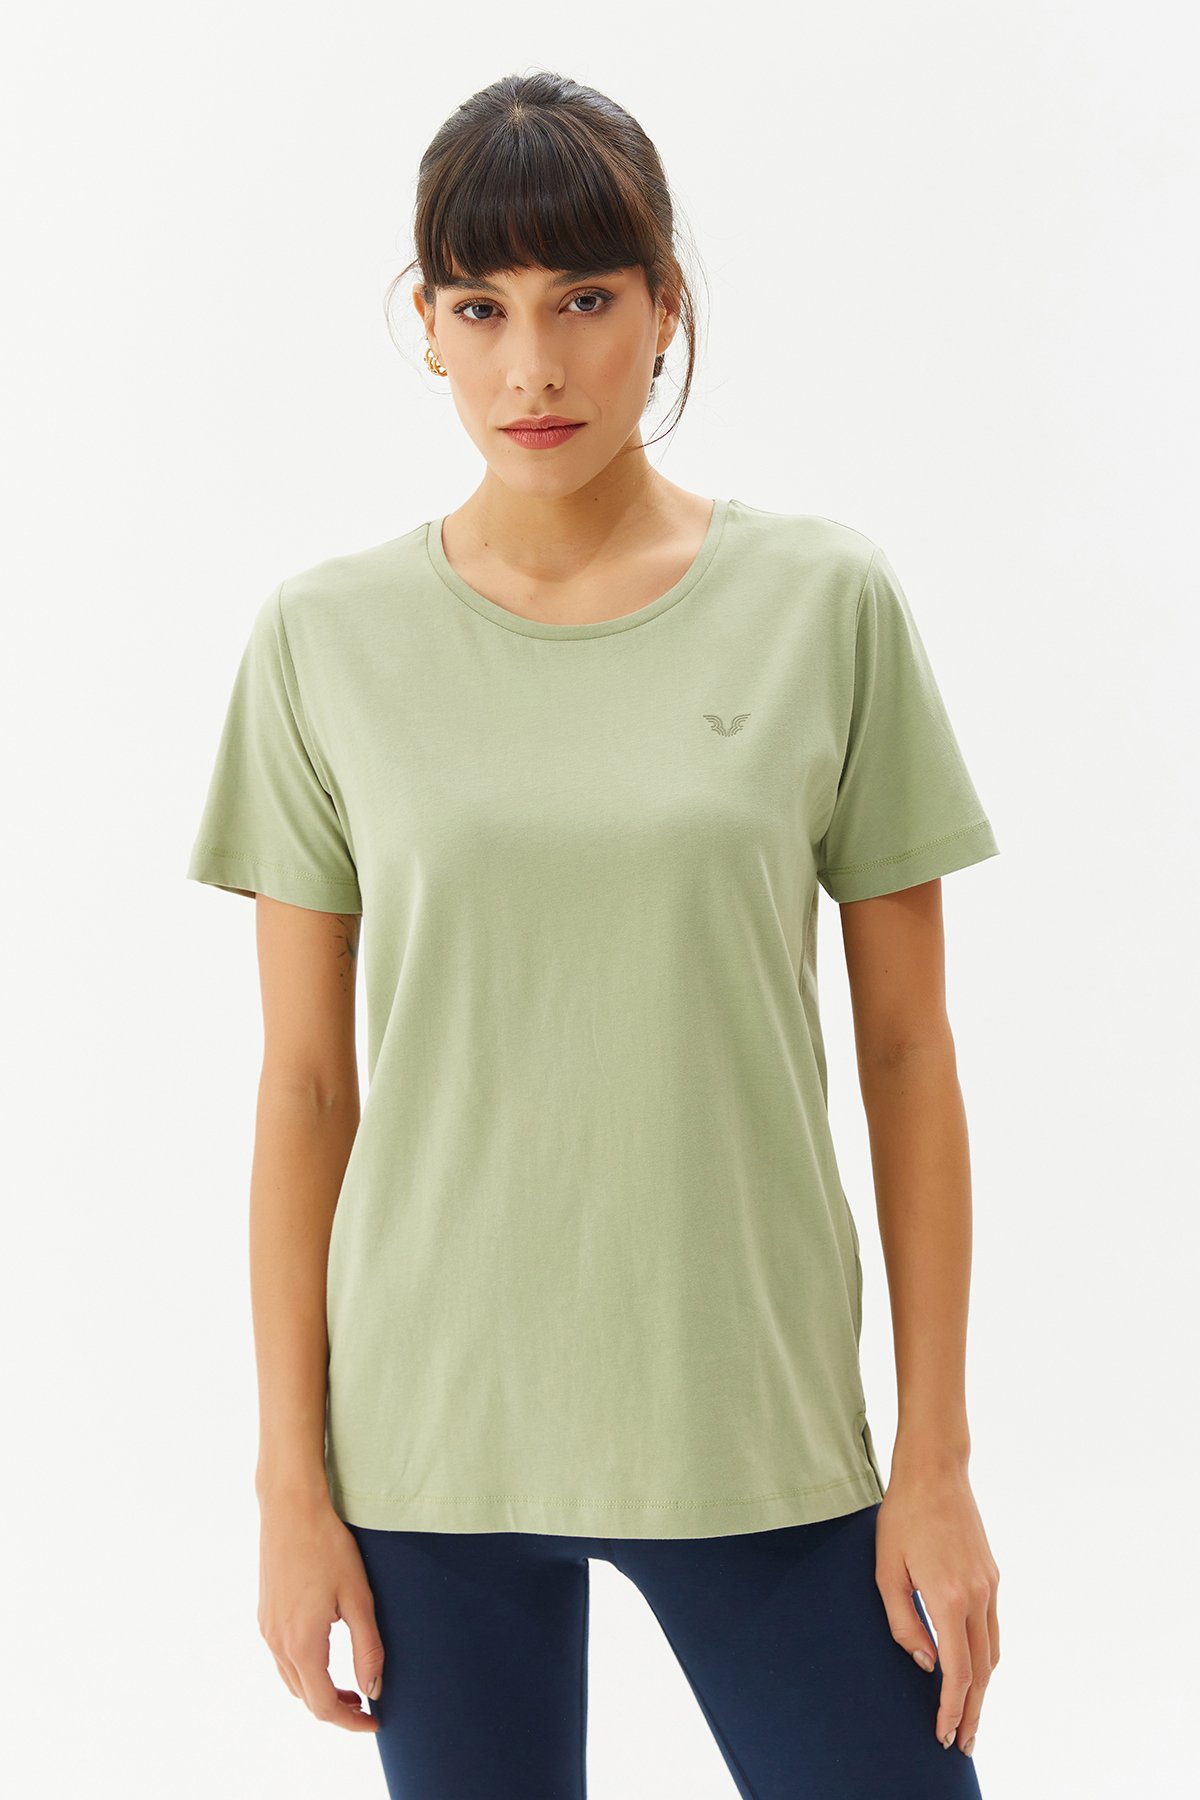 Kadın Yeşil Basıc Kısa Kol Tişört 9242 - 1